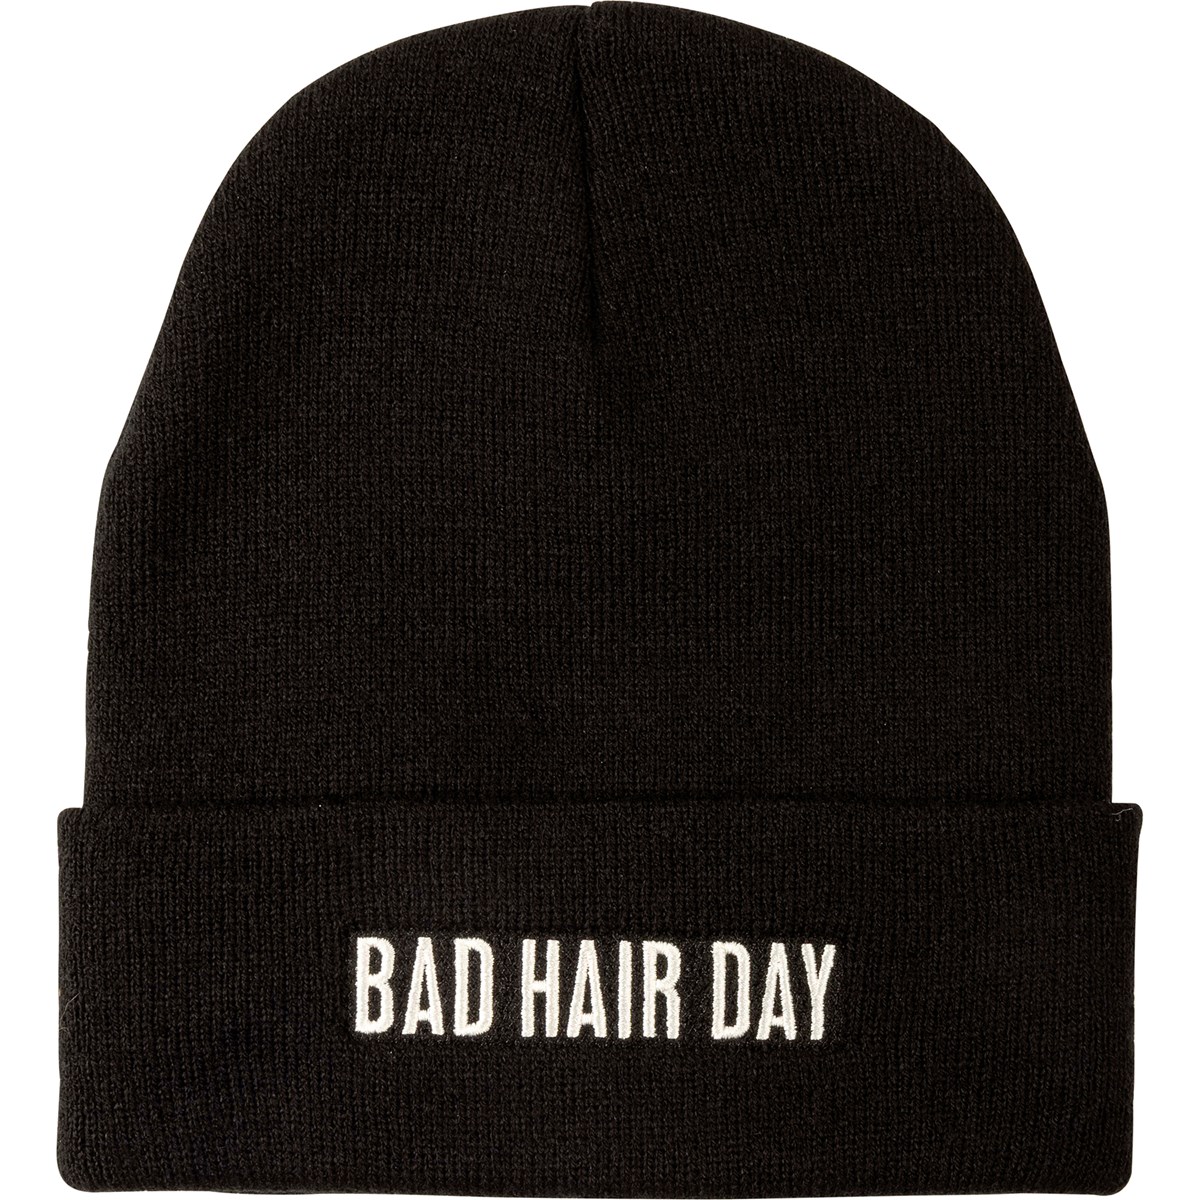 Bad Hair Day Beanie - Acrylic